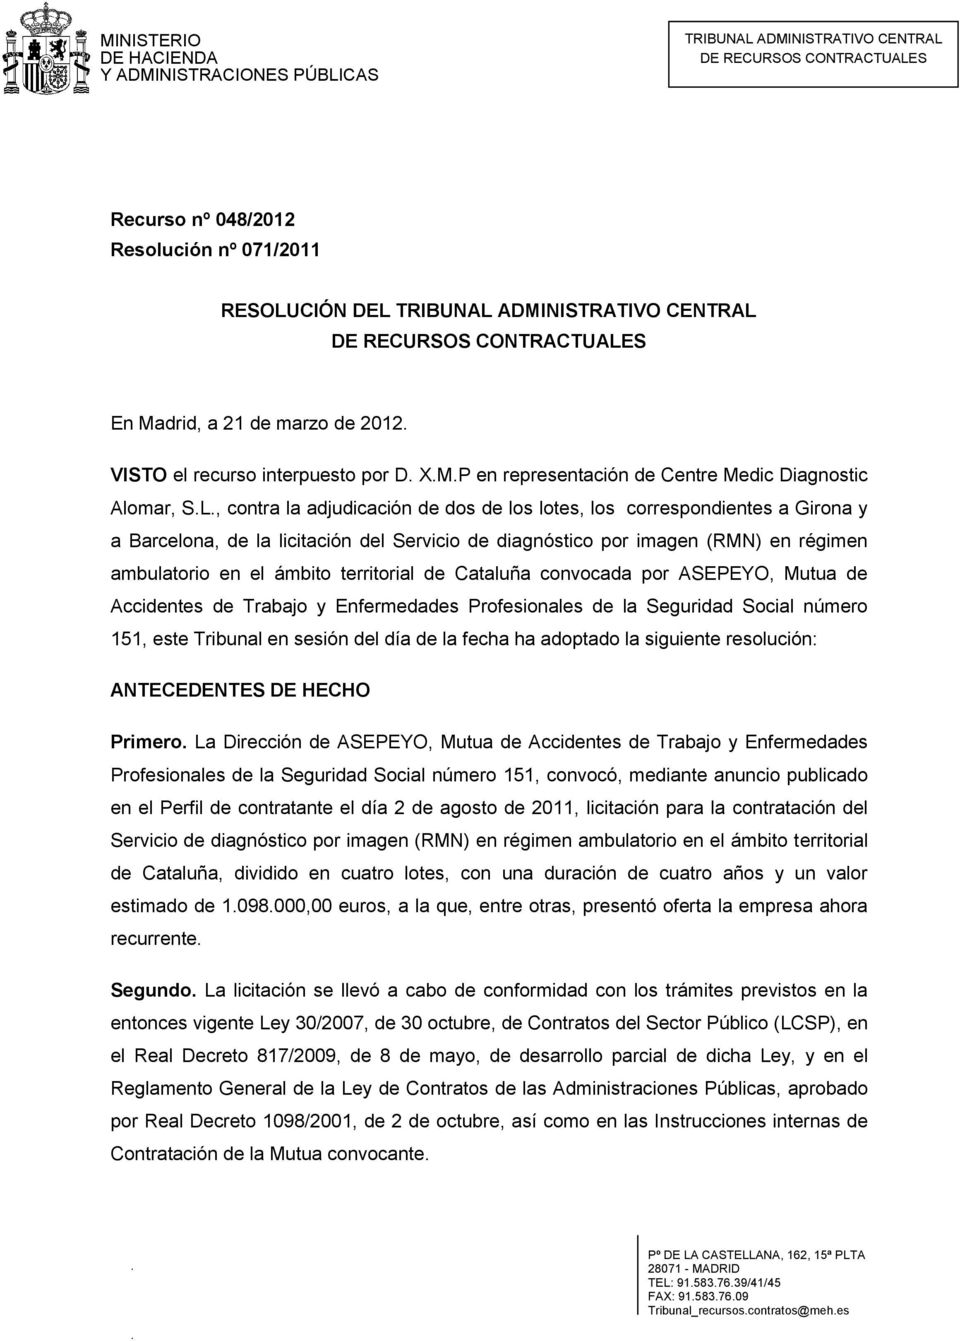 territorial de Cataluña convocada por ASEPEYO, Mutua de Accidentes de Trabajo y Enfermedades Profesionales de la Seguridad Social número 151, este Tribunal en sesión del día de la fecha ha adoptado